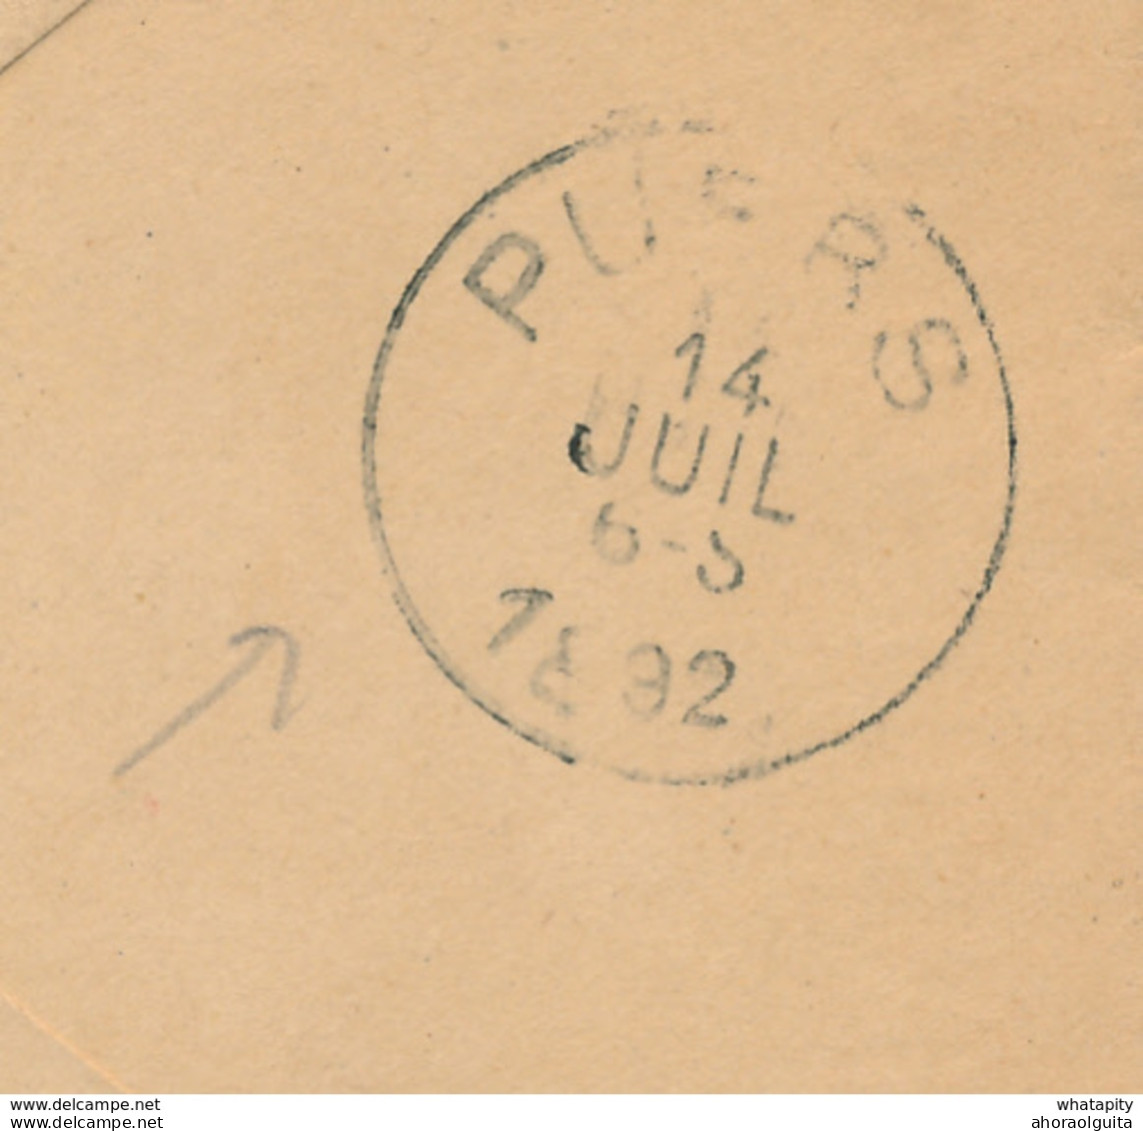 ZZ888 - RARE Enveloppe Préimprimée En S.M. - Cachet 13è Régiment D' Infanterie - NAMUR Station 1892 à HINGENE Via PUERS - Covers & Documents